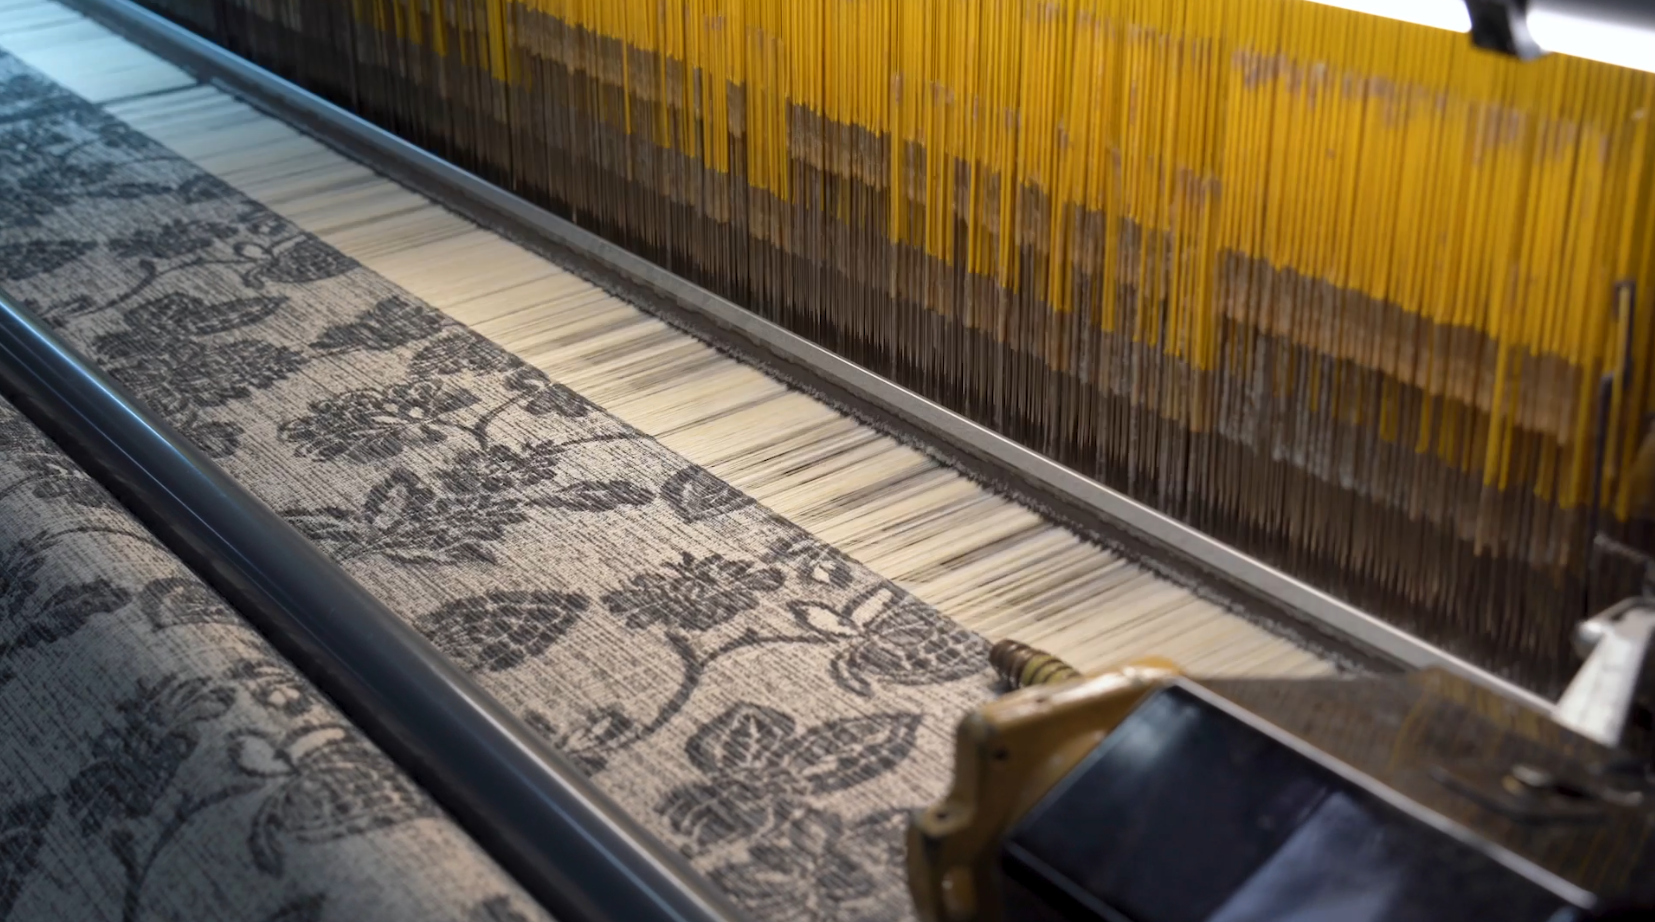 Textiel-, hout- en meubelsector in Oost-Vlaanderen: naar een futureproof toekomst